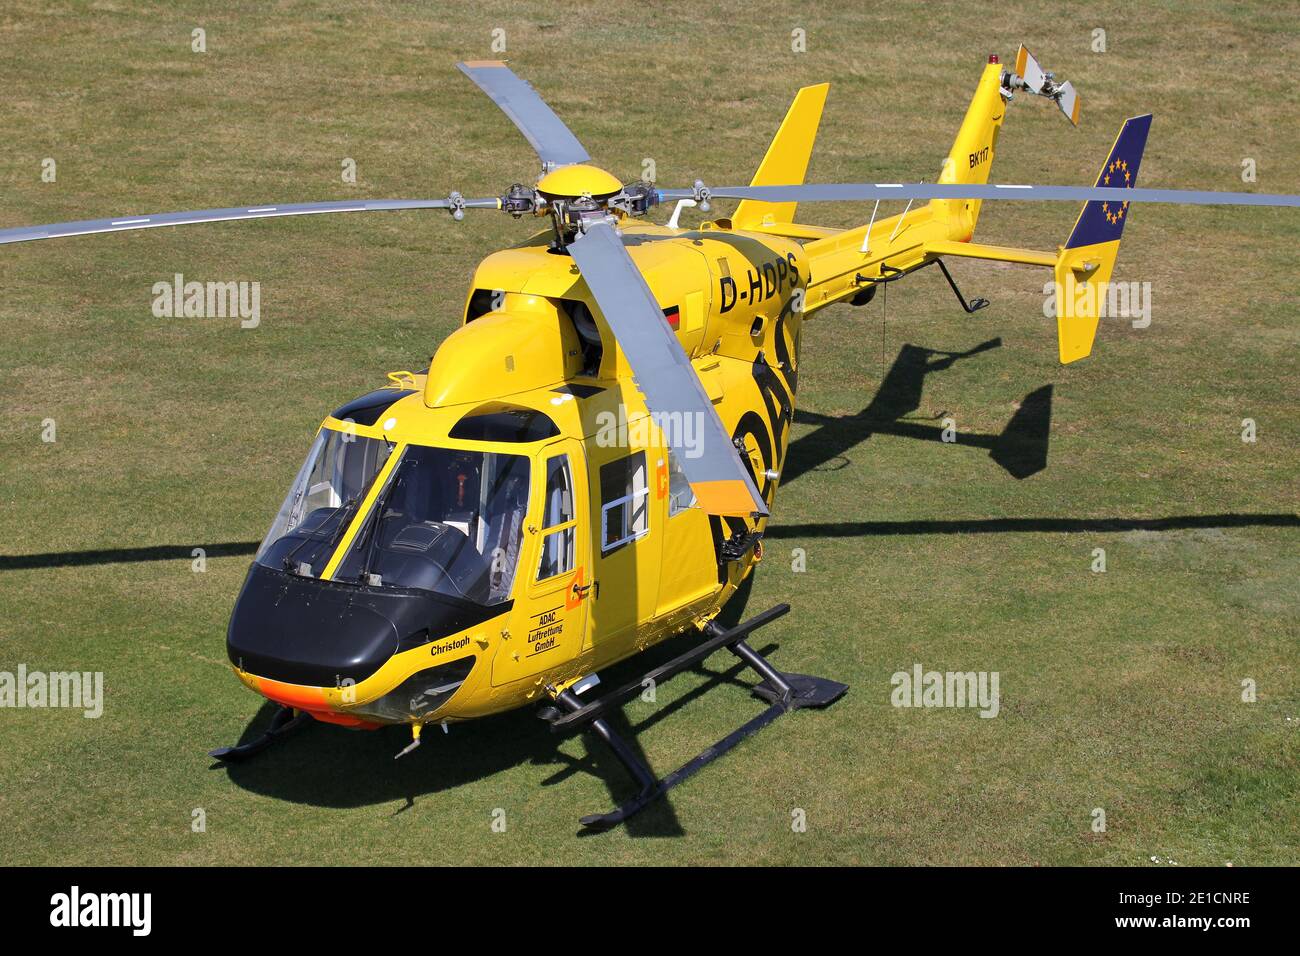 MBB BK 117B-2 hélicoptère de sauvetage ADAC Luftrettung avec enregistrement D-HDPS à l'aéroport de Bonn Hangelar. Banque D'Images